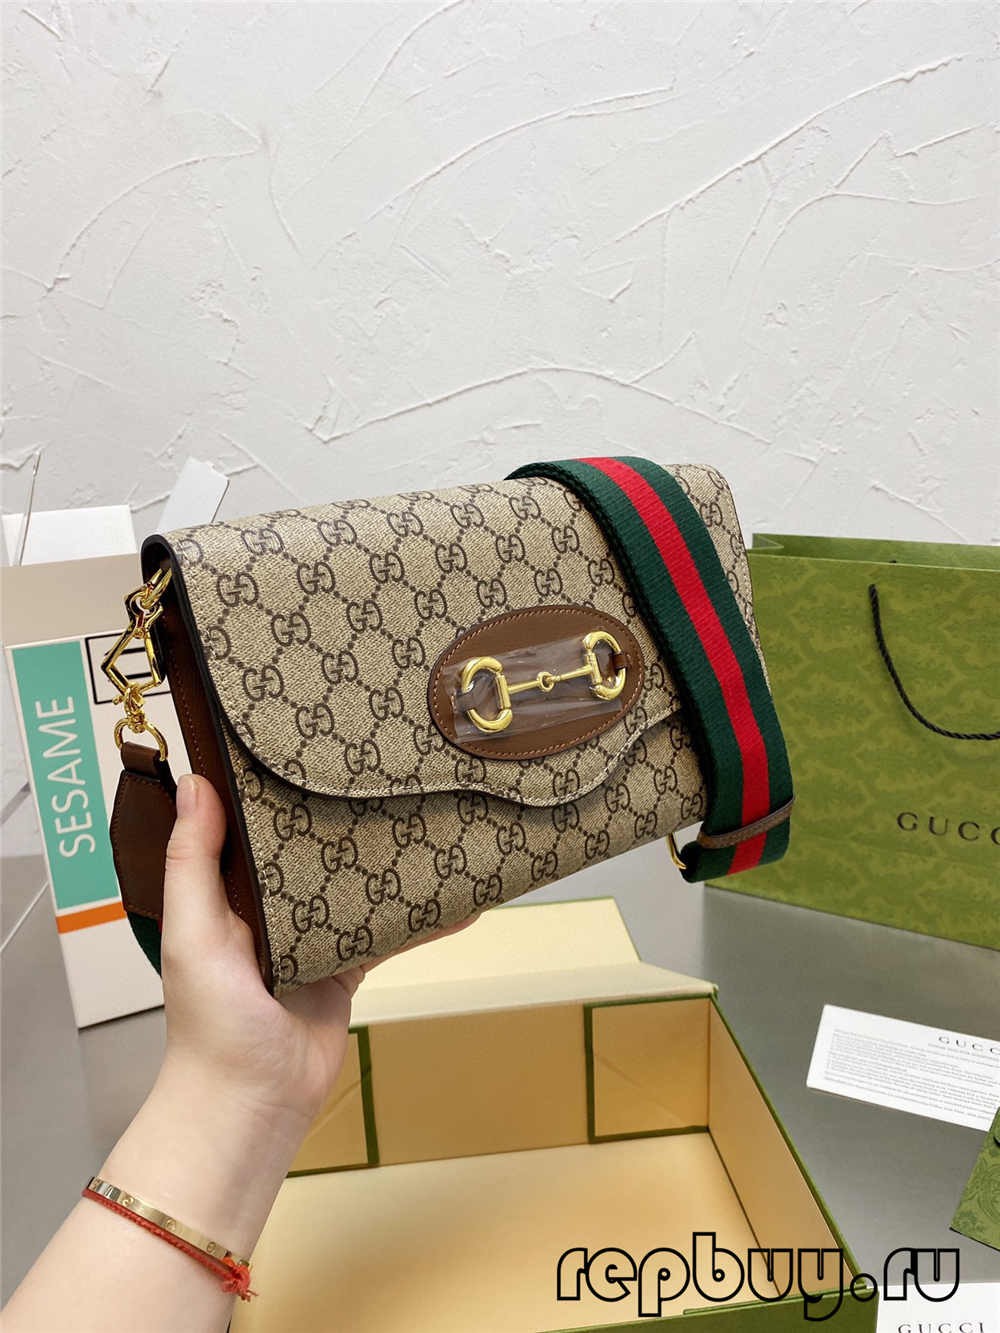 Gucci 1955 Horsebit kalitate oneneko erreplika poltsa (2022 eguneratua)-Best Quality Fake Louis Vuitton Bag Online Store, Replica designer bag ru